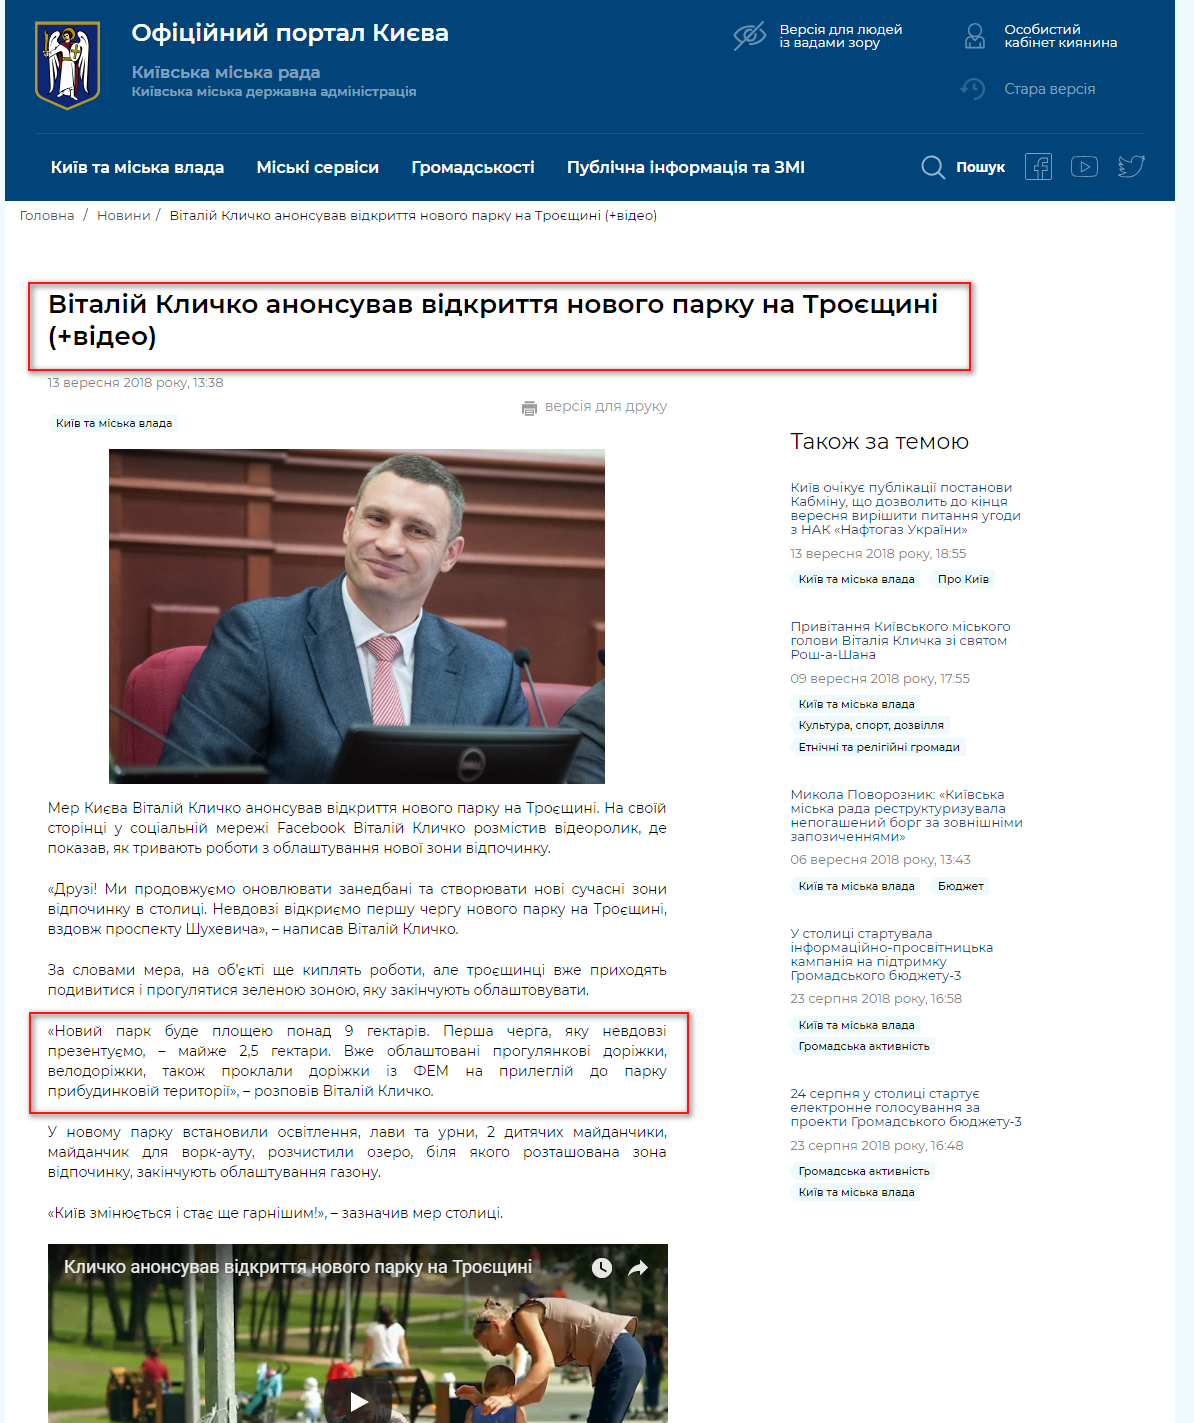 https://kyivcity.gov.ua/news/vitaliy_klichko_anonsuvav_vidkrittya_novogo_parku_na_troyeschini.html